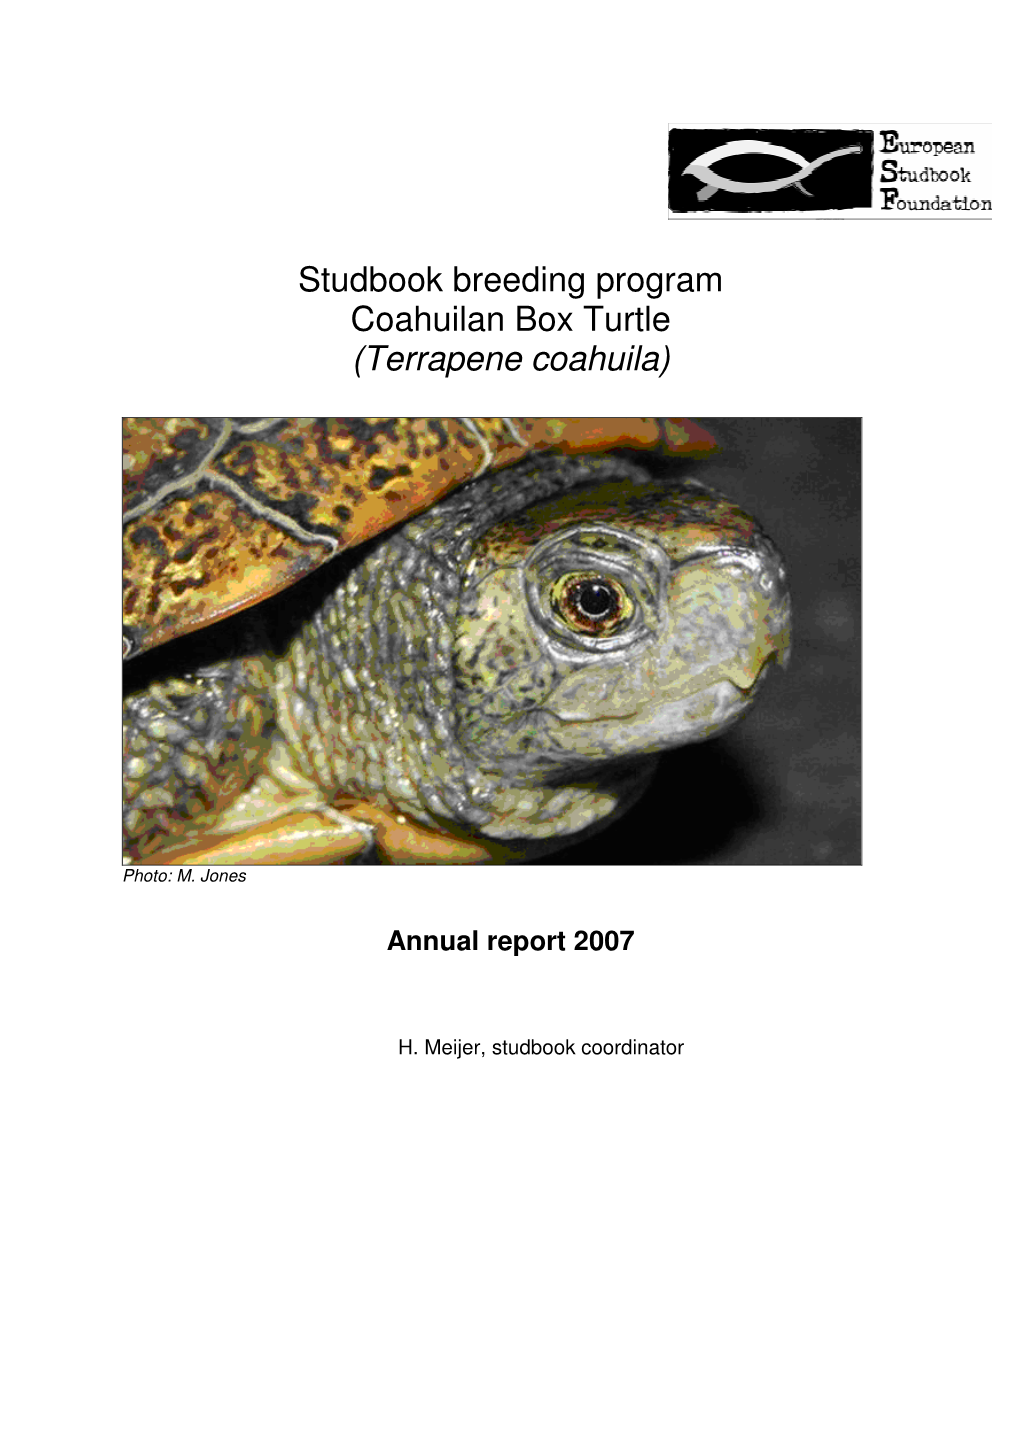 Studbook Breeding Program Coahuilan Box Turtle (Terrapene Coahuila)